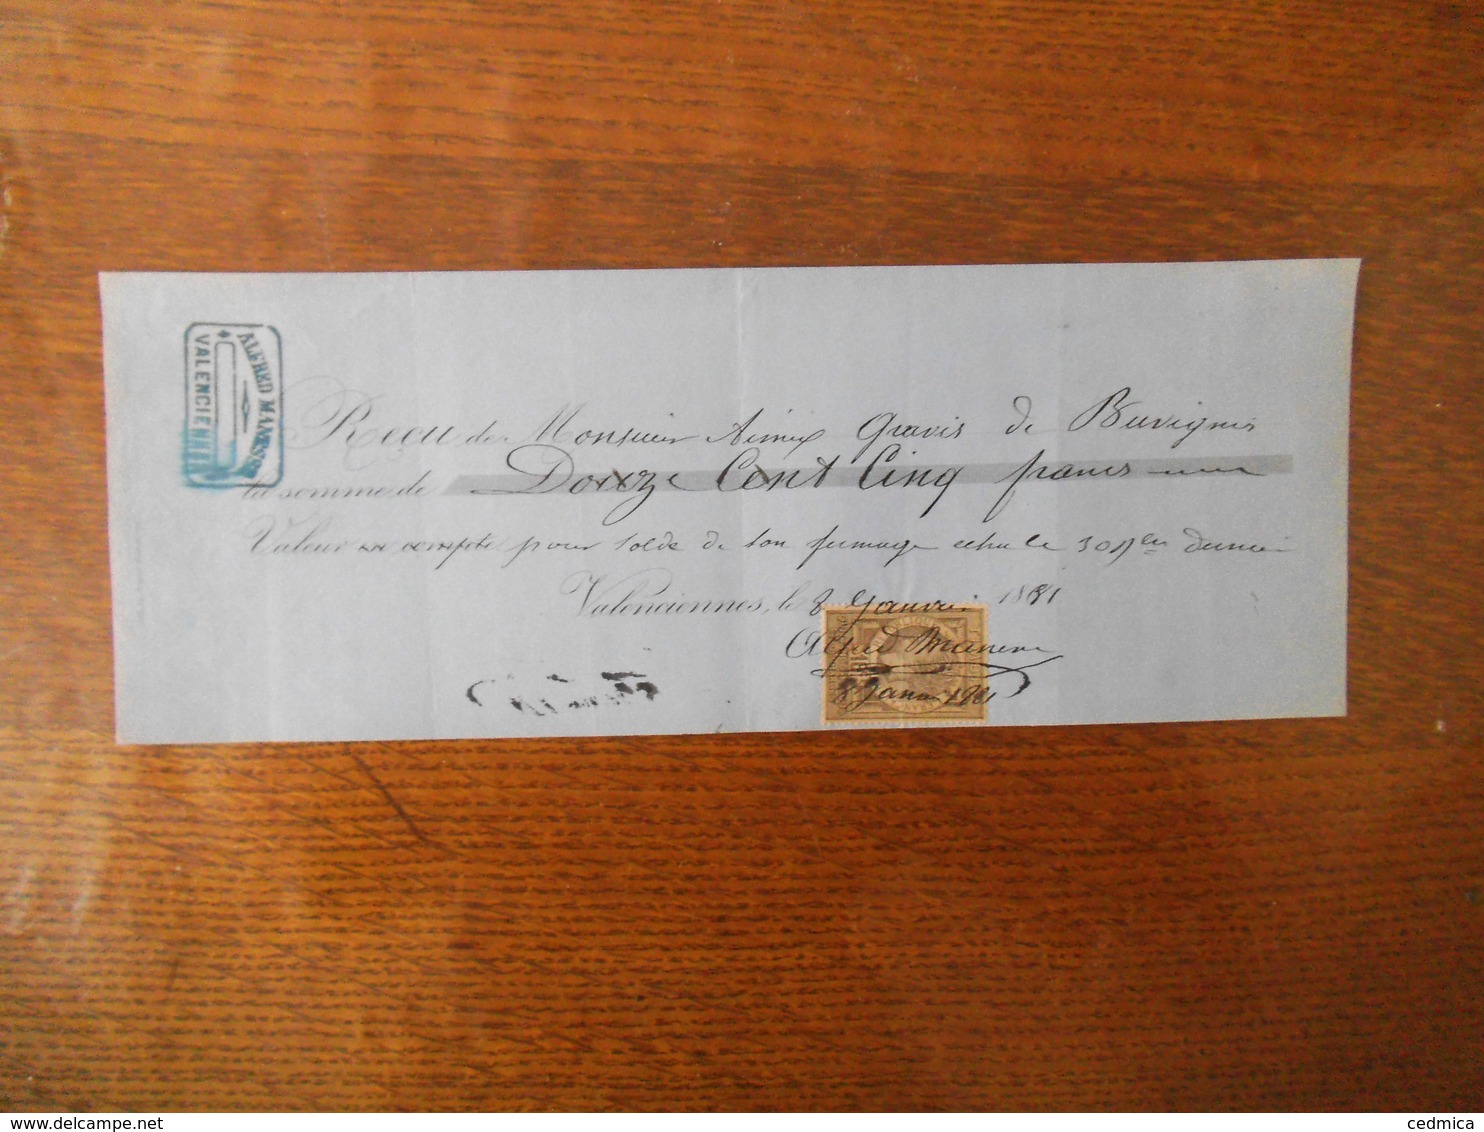 VALENCIENNES ALFRED MANESSE RECU DE MONSIEUR GRAVIS DE BUVIGNIES DU 8 JANVIER 1881 TIMBRE QUITTANCES - Manuskripte